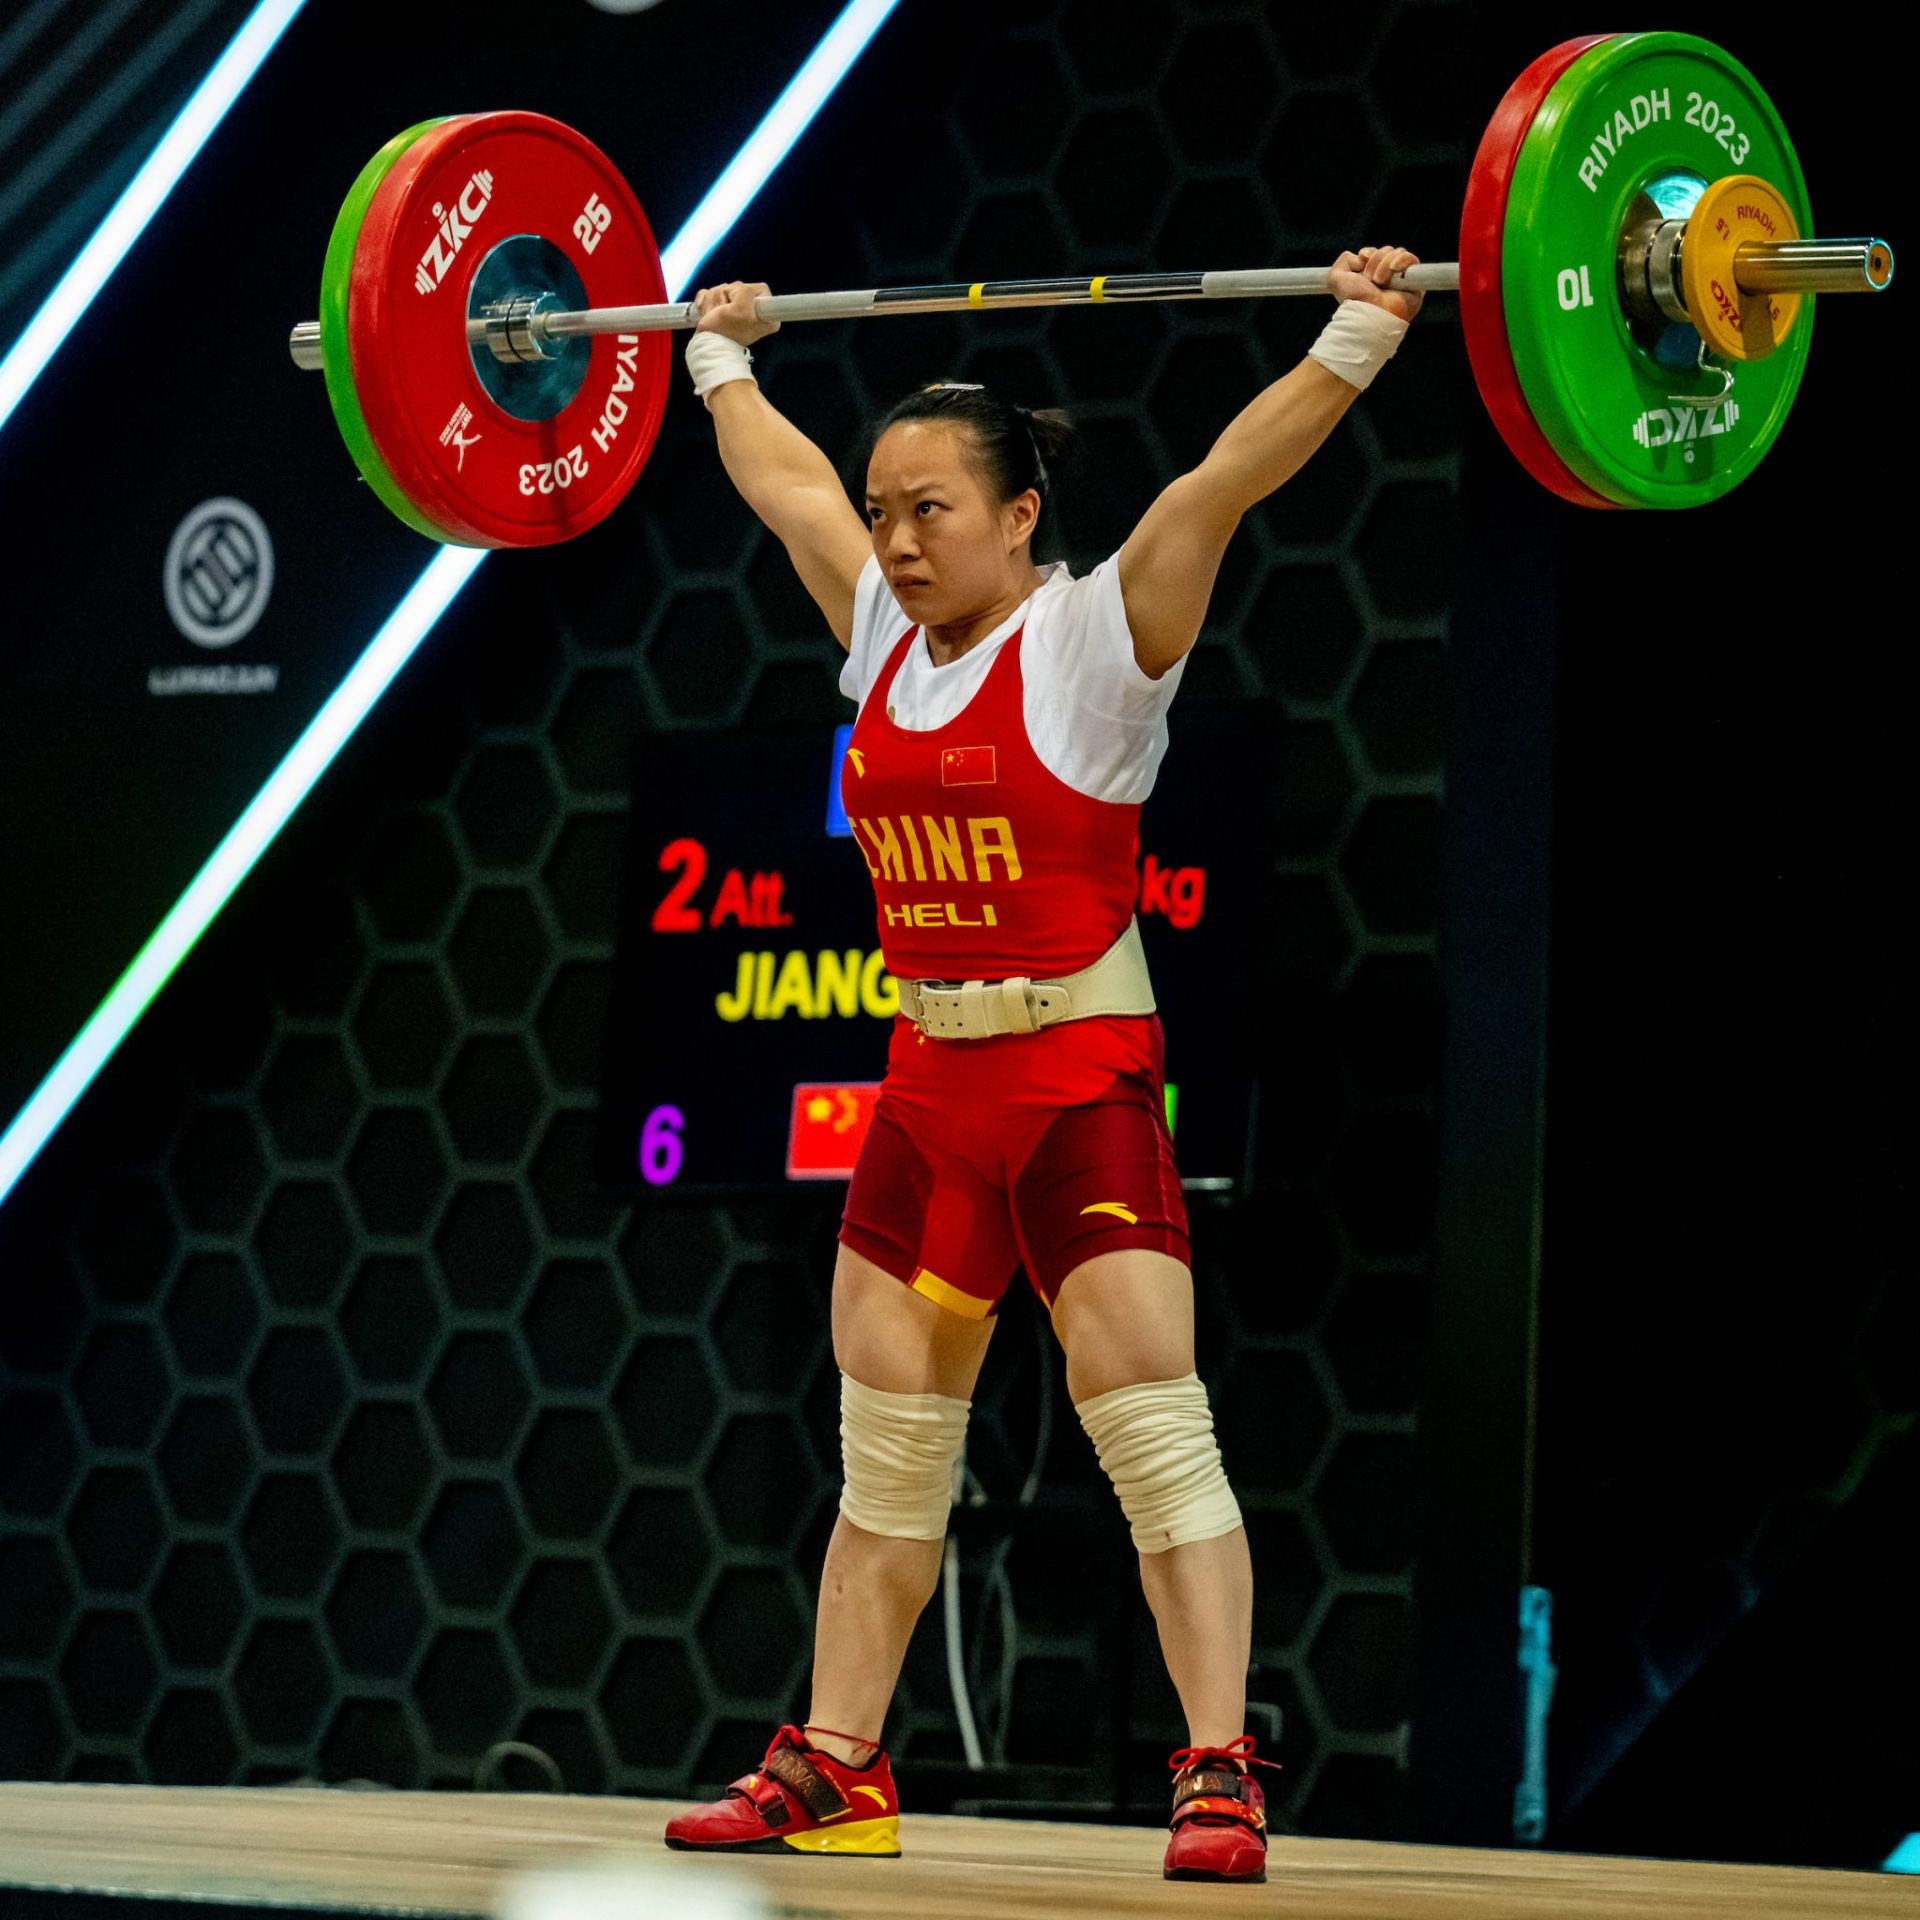 蒋惠花在比赛中国际举重联合会官网图片